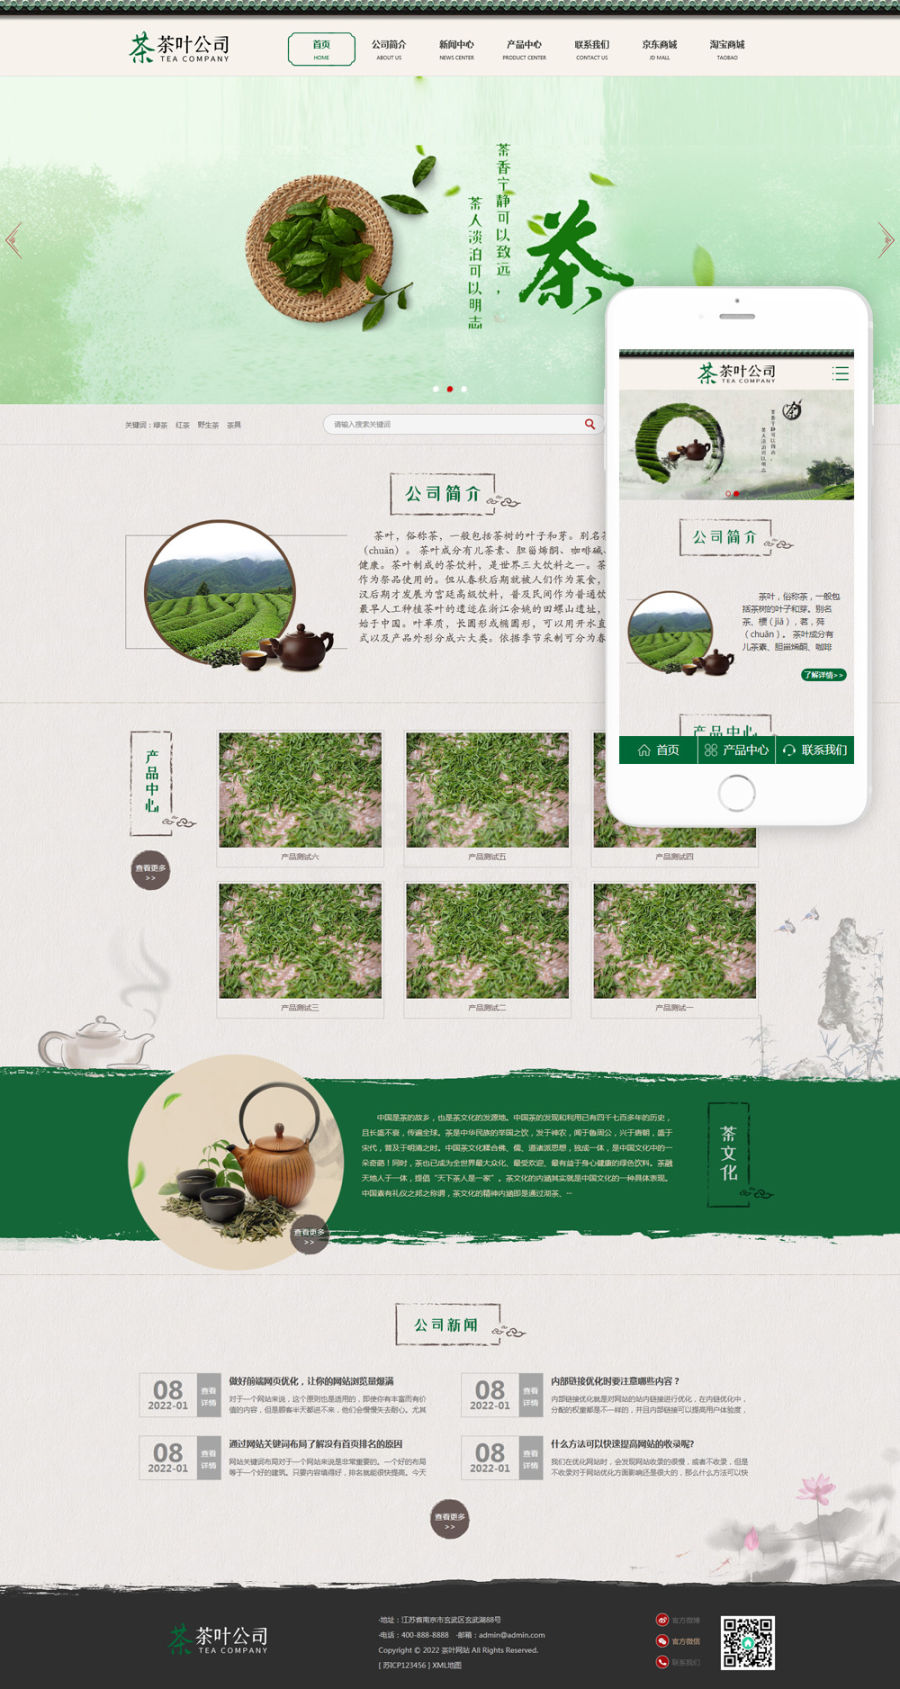 中国古典风格的茶叶销售公司简介网站源码